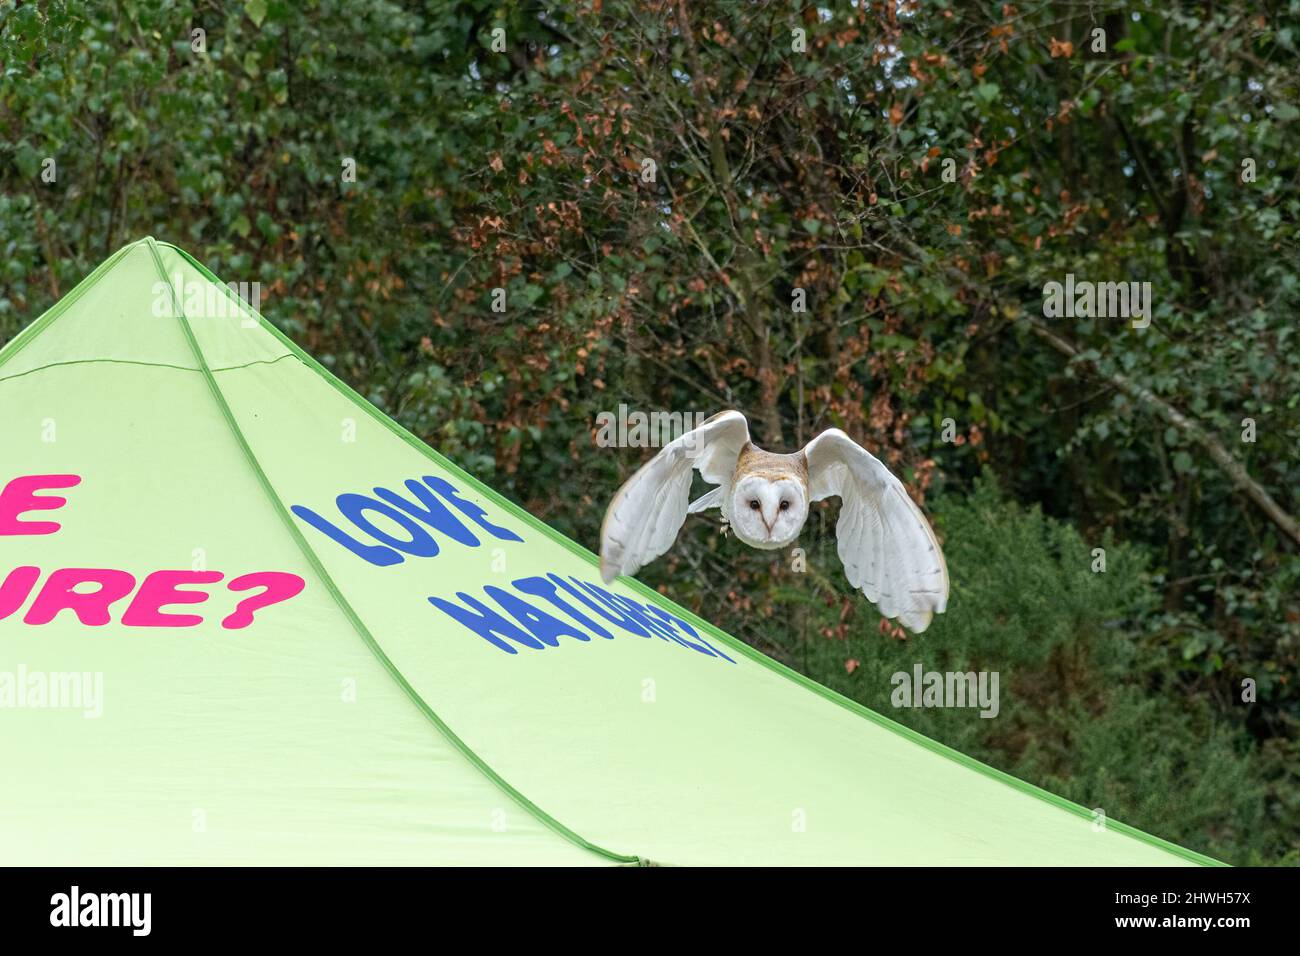 Búho granero volando sobre una tienda con Love Nature en ella, en un show de campo, Reino Unido. Demostración de aves de presa volando. Foto de stock